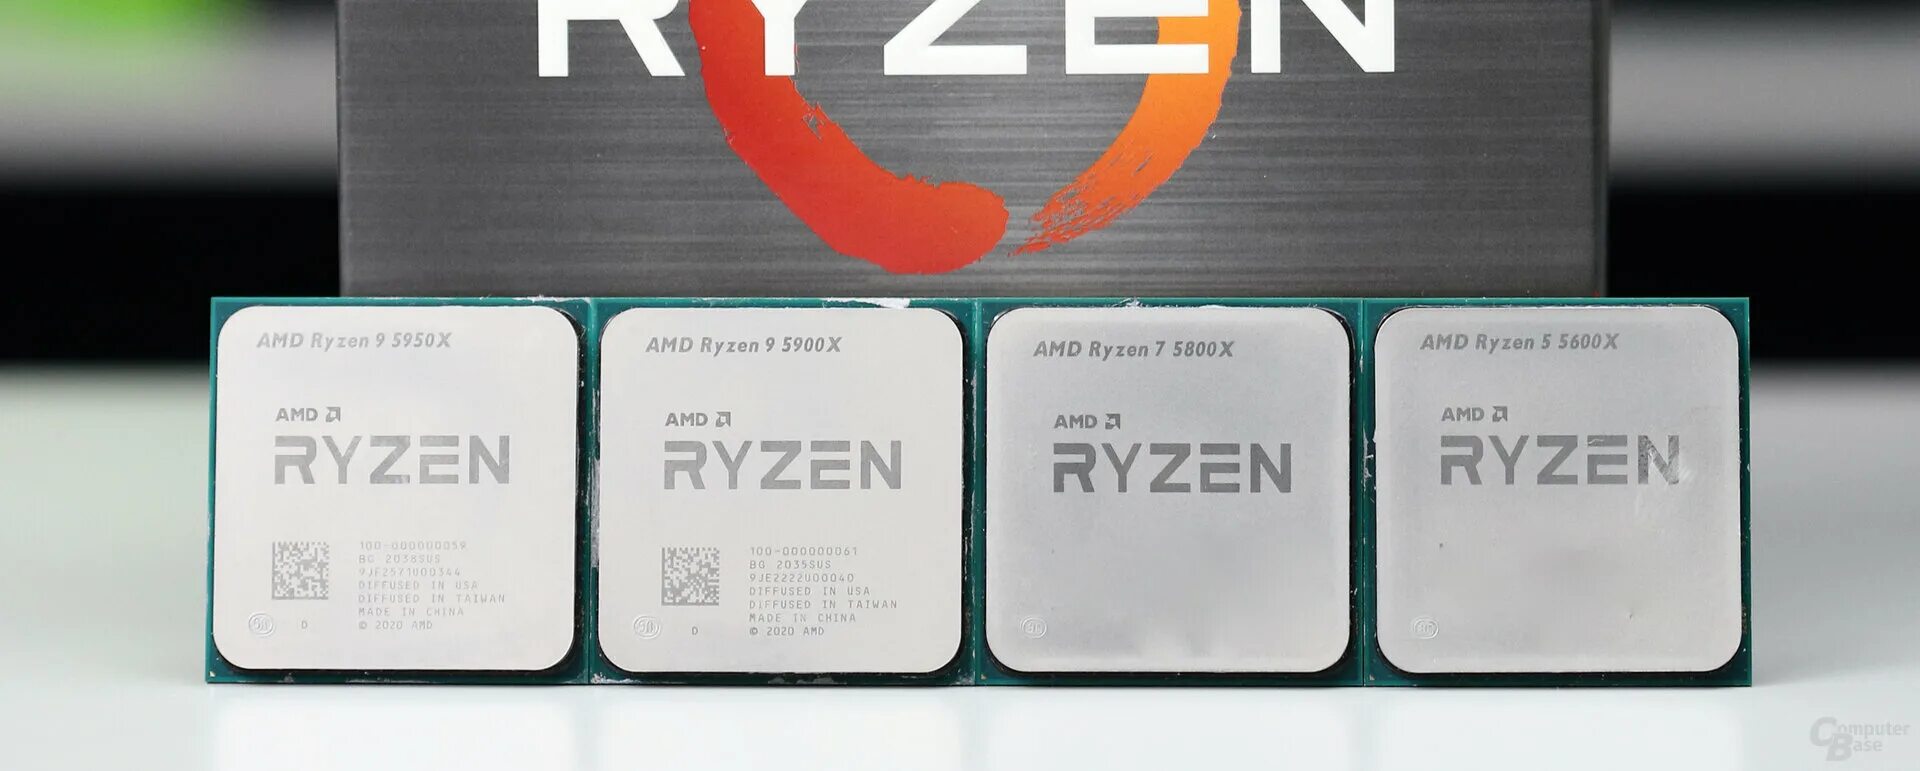 Amd ryzen 9 5900x oem. AMD Ryzen 5 5600x. Процессор AMD Ryzen 7 5700x OEM. Процессор AMD Ryzen 9 5900x. Процессор AMD Ryzen 5000.